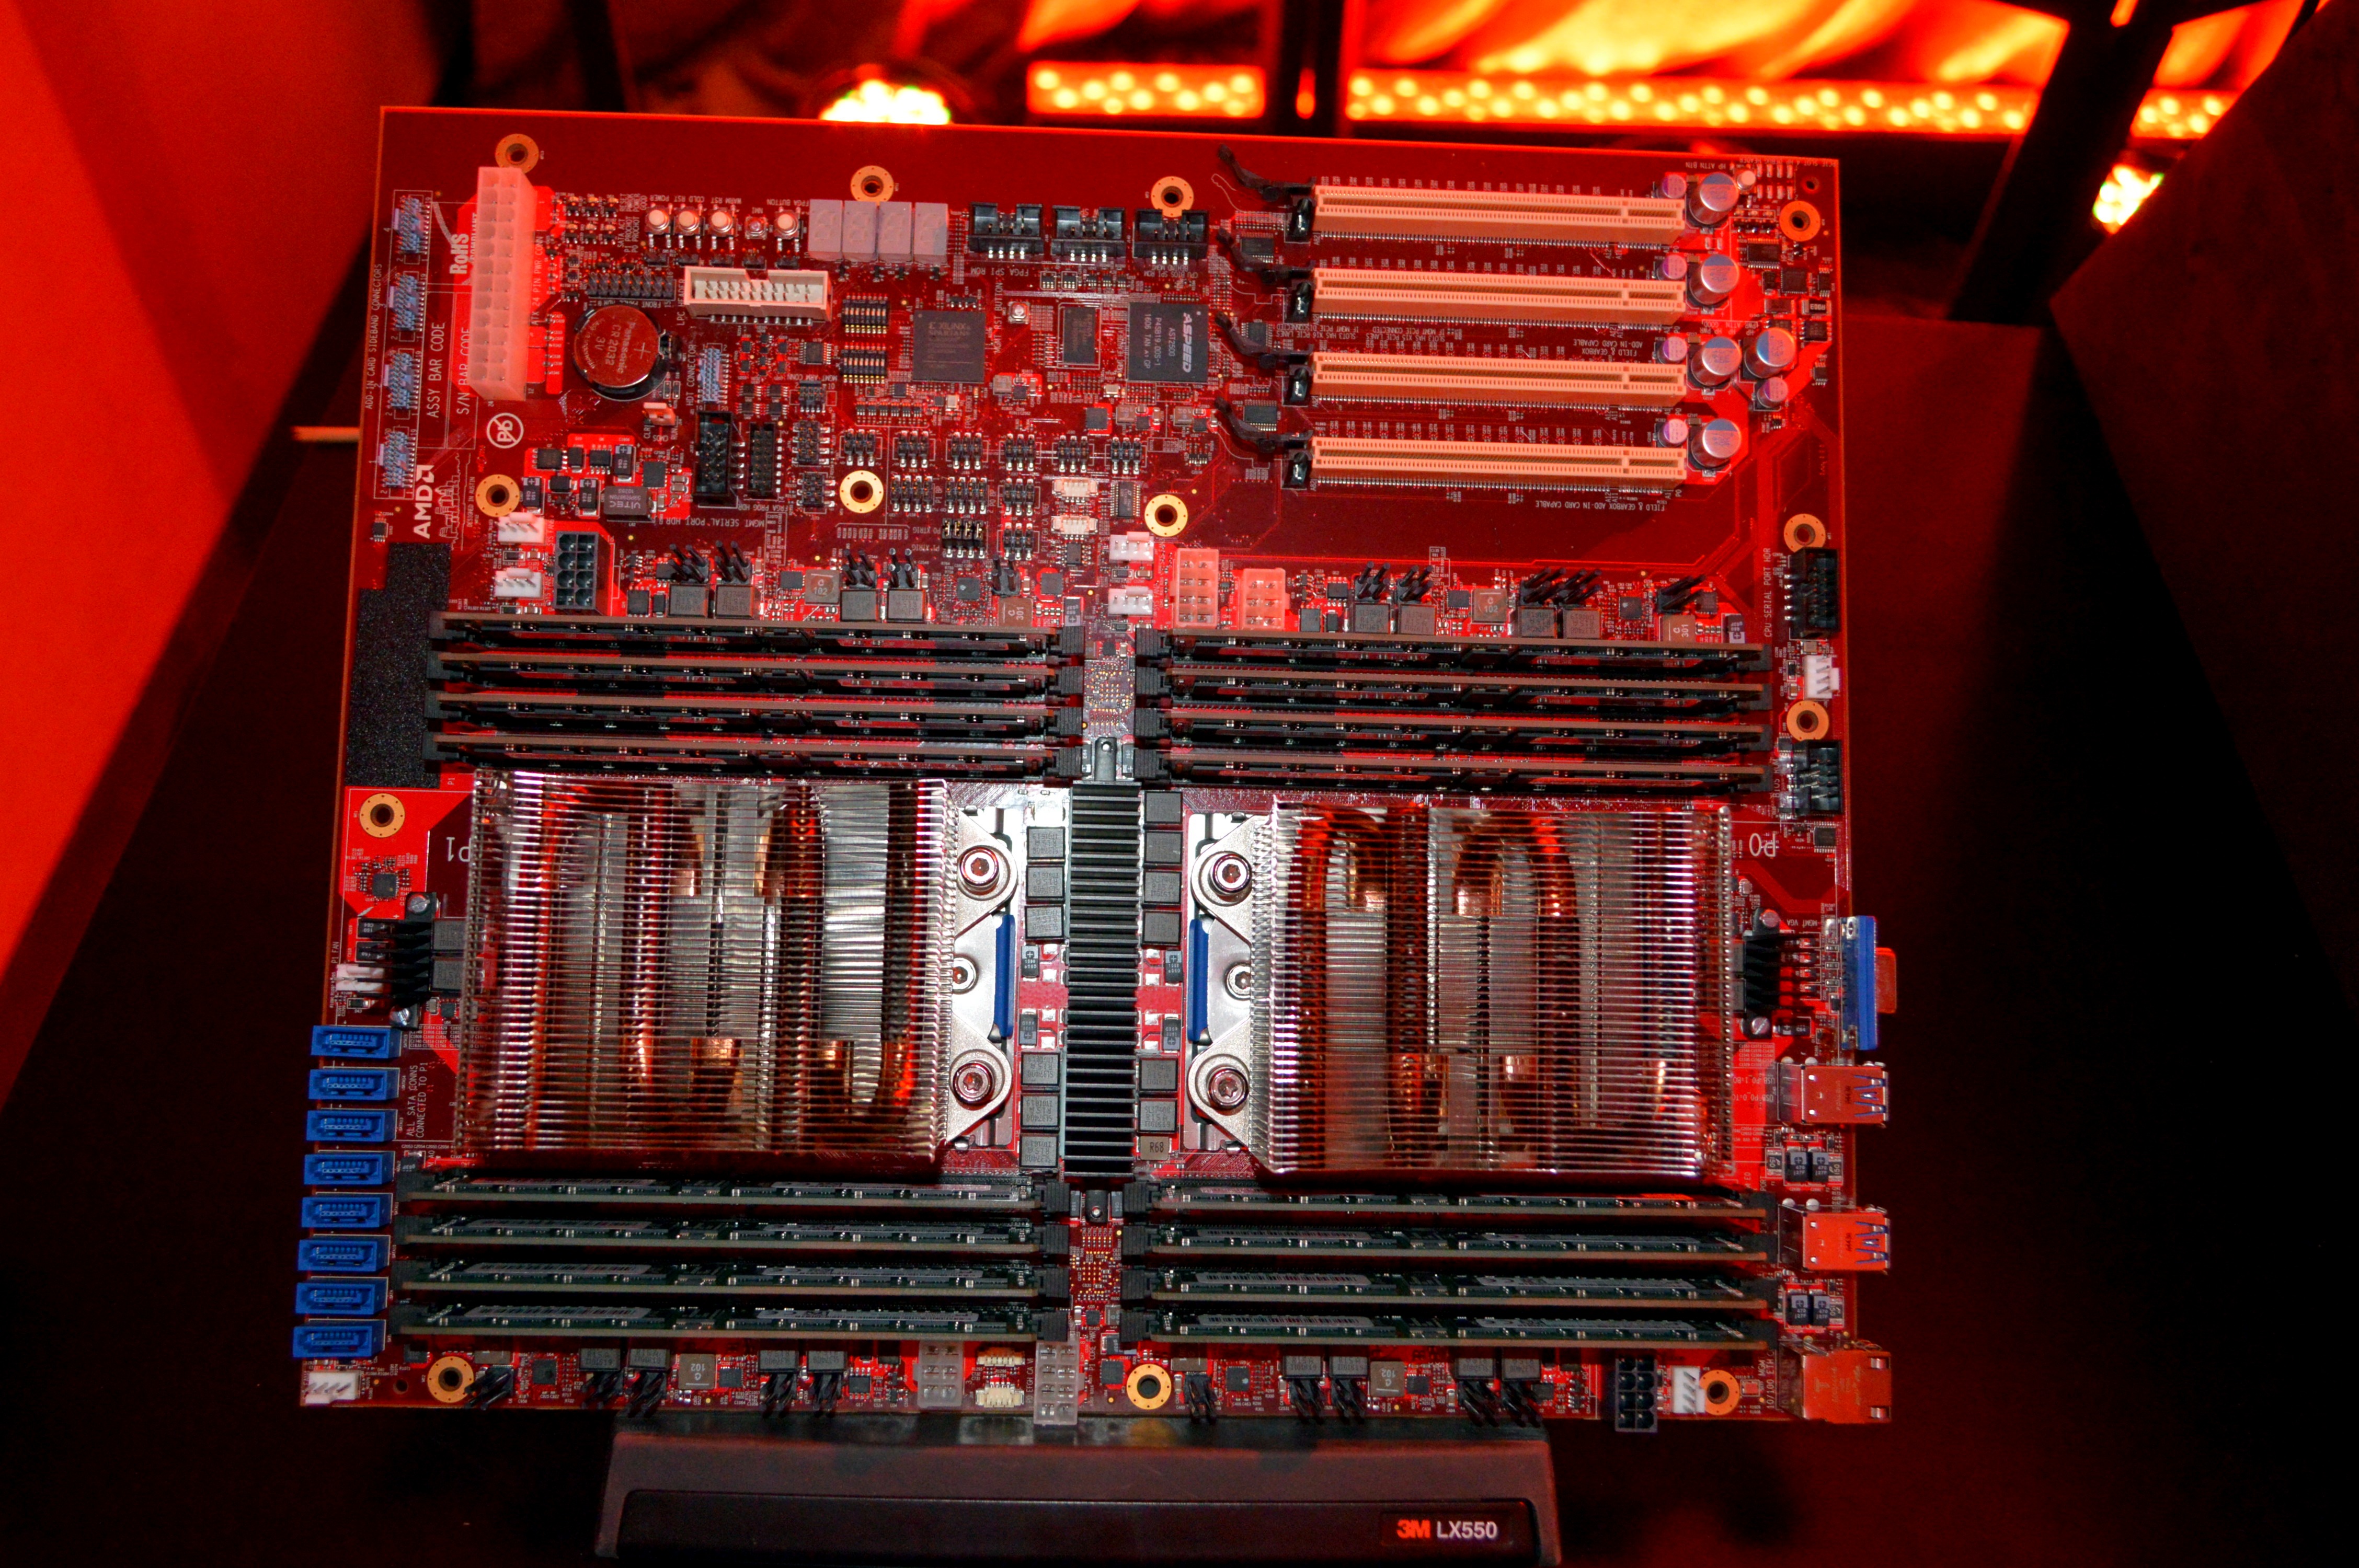 plakboek te rechtvaardigen textuur Early AMD Zen Server CPU and Motherboard Details: Codename 'Naples',  32-cores, Dual Socket Platforms, Q2 2017